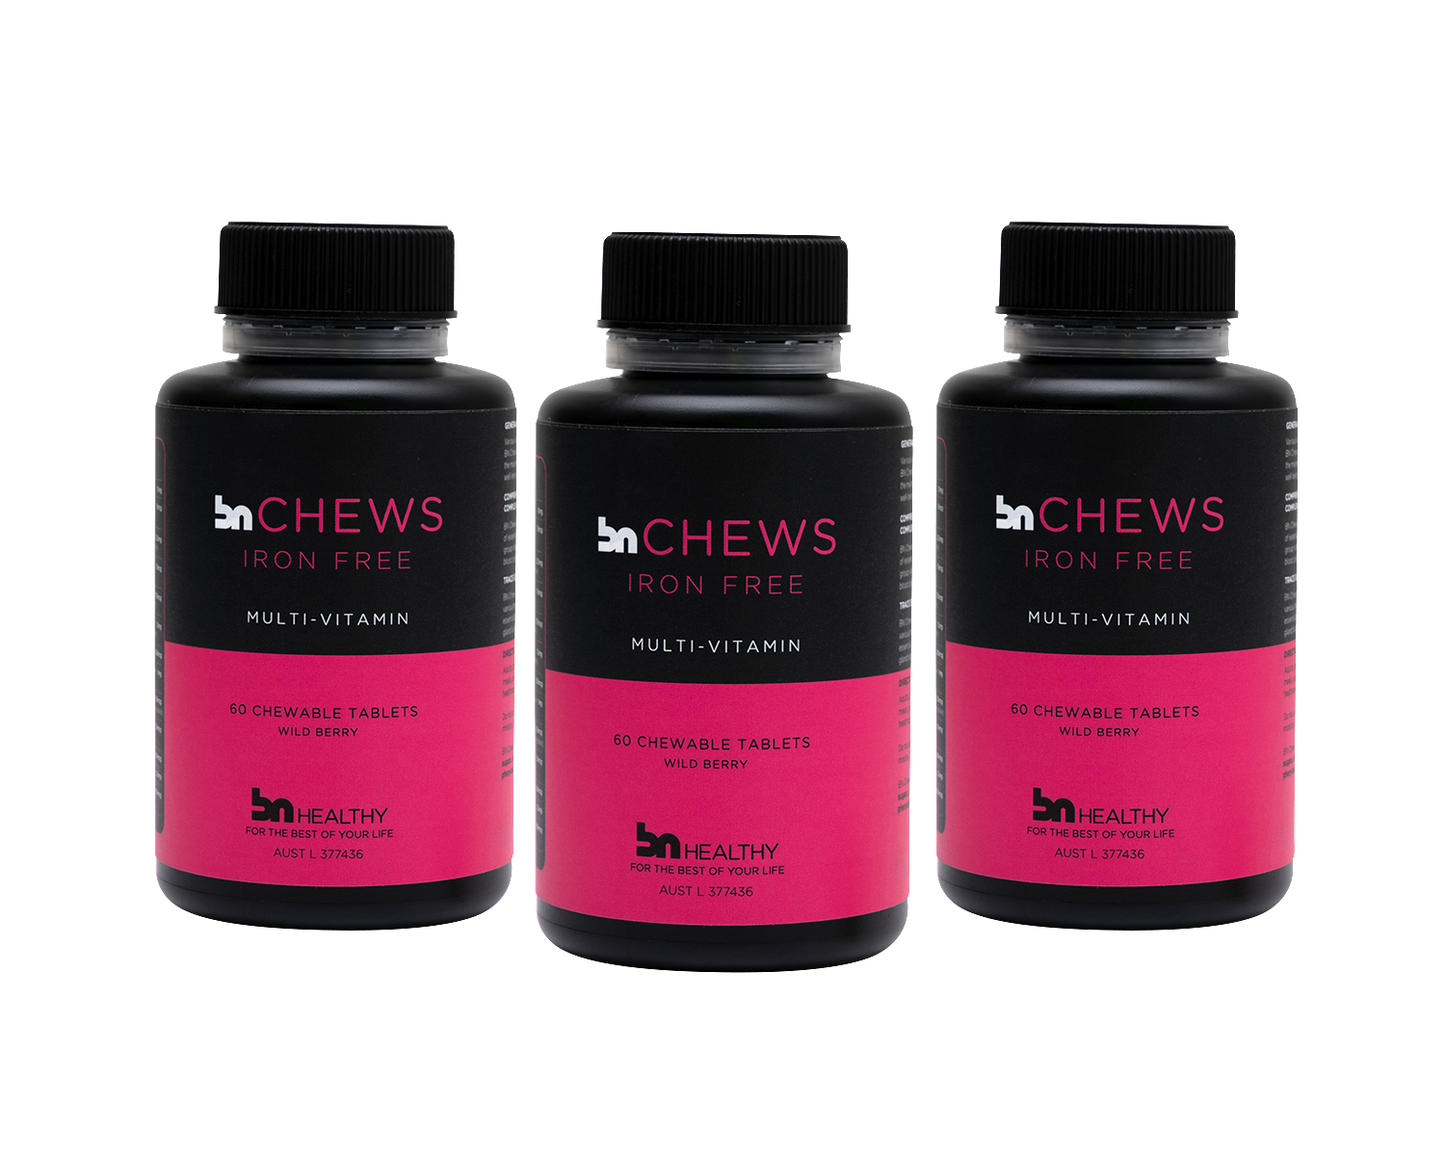 BN Chews Iron-Free - Chewable Multivitamins - 3 Bottles - Save 15%